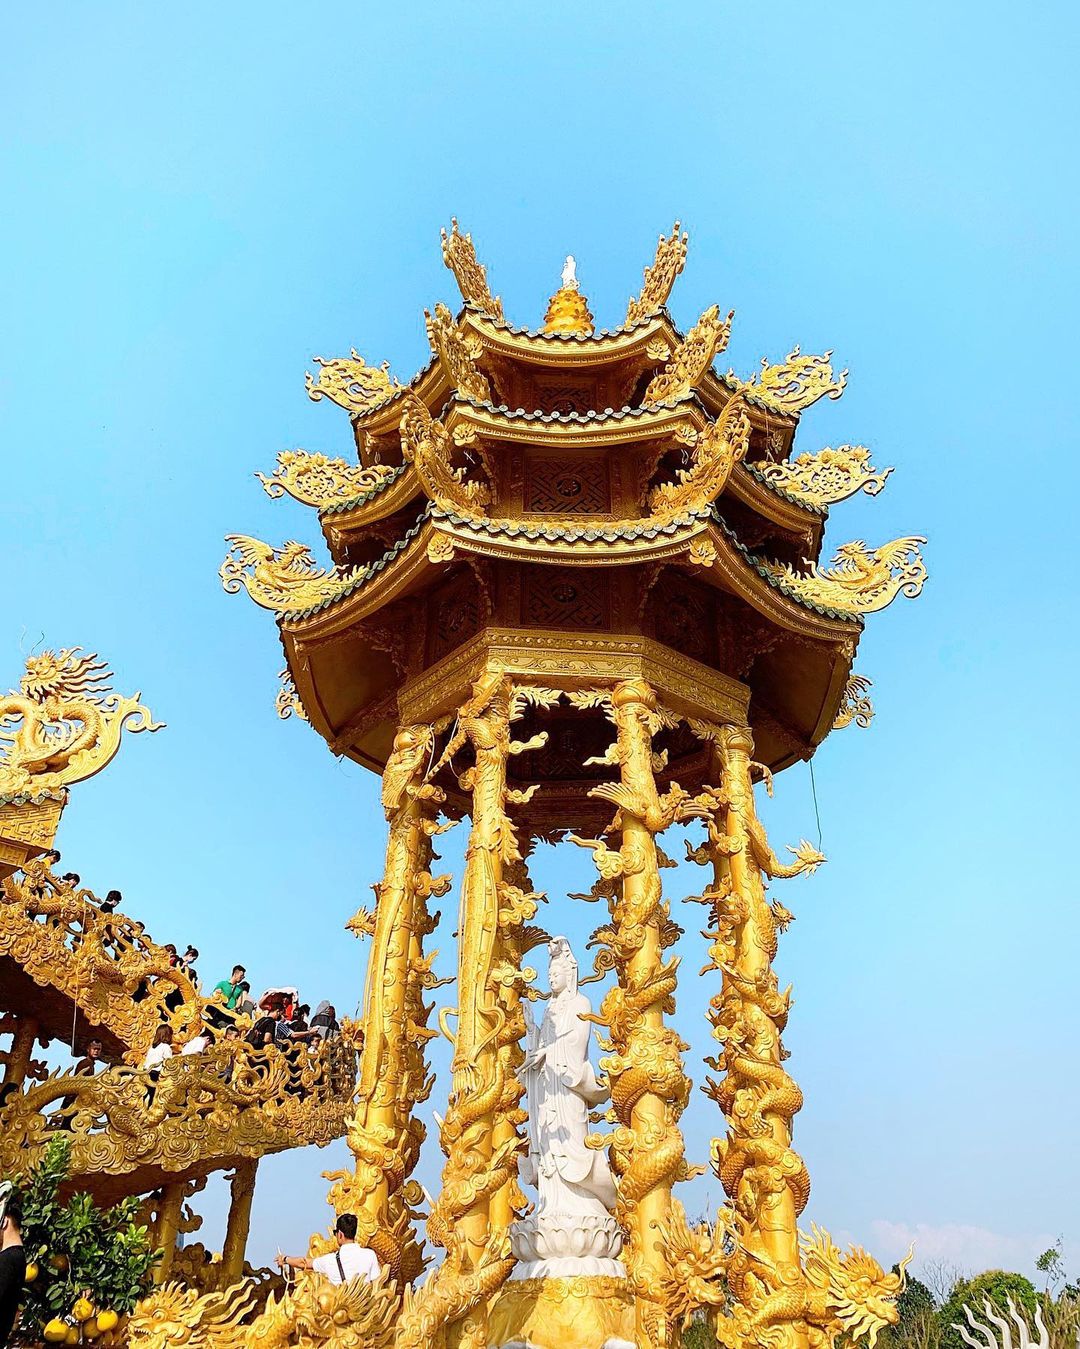 Ngôi chùa có 4 tháp tượng Bồ tát, mỗi tháp có 6 cột với họa tiết rồng cuốn đặc trưng của kiến trúc đền chùa.